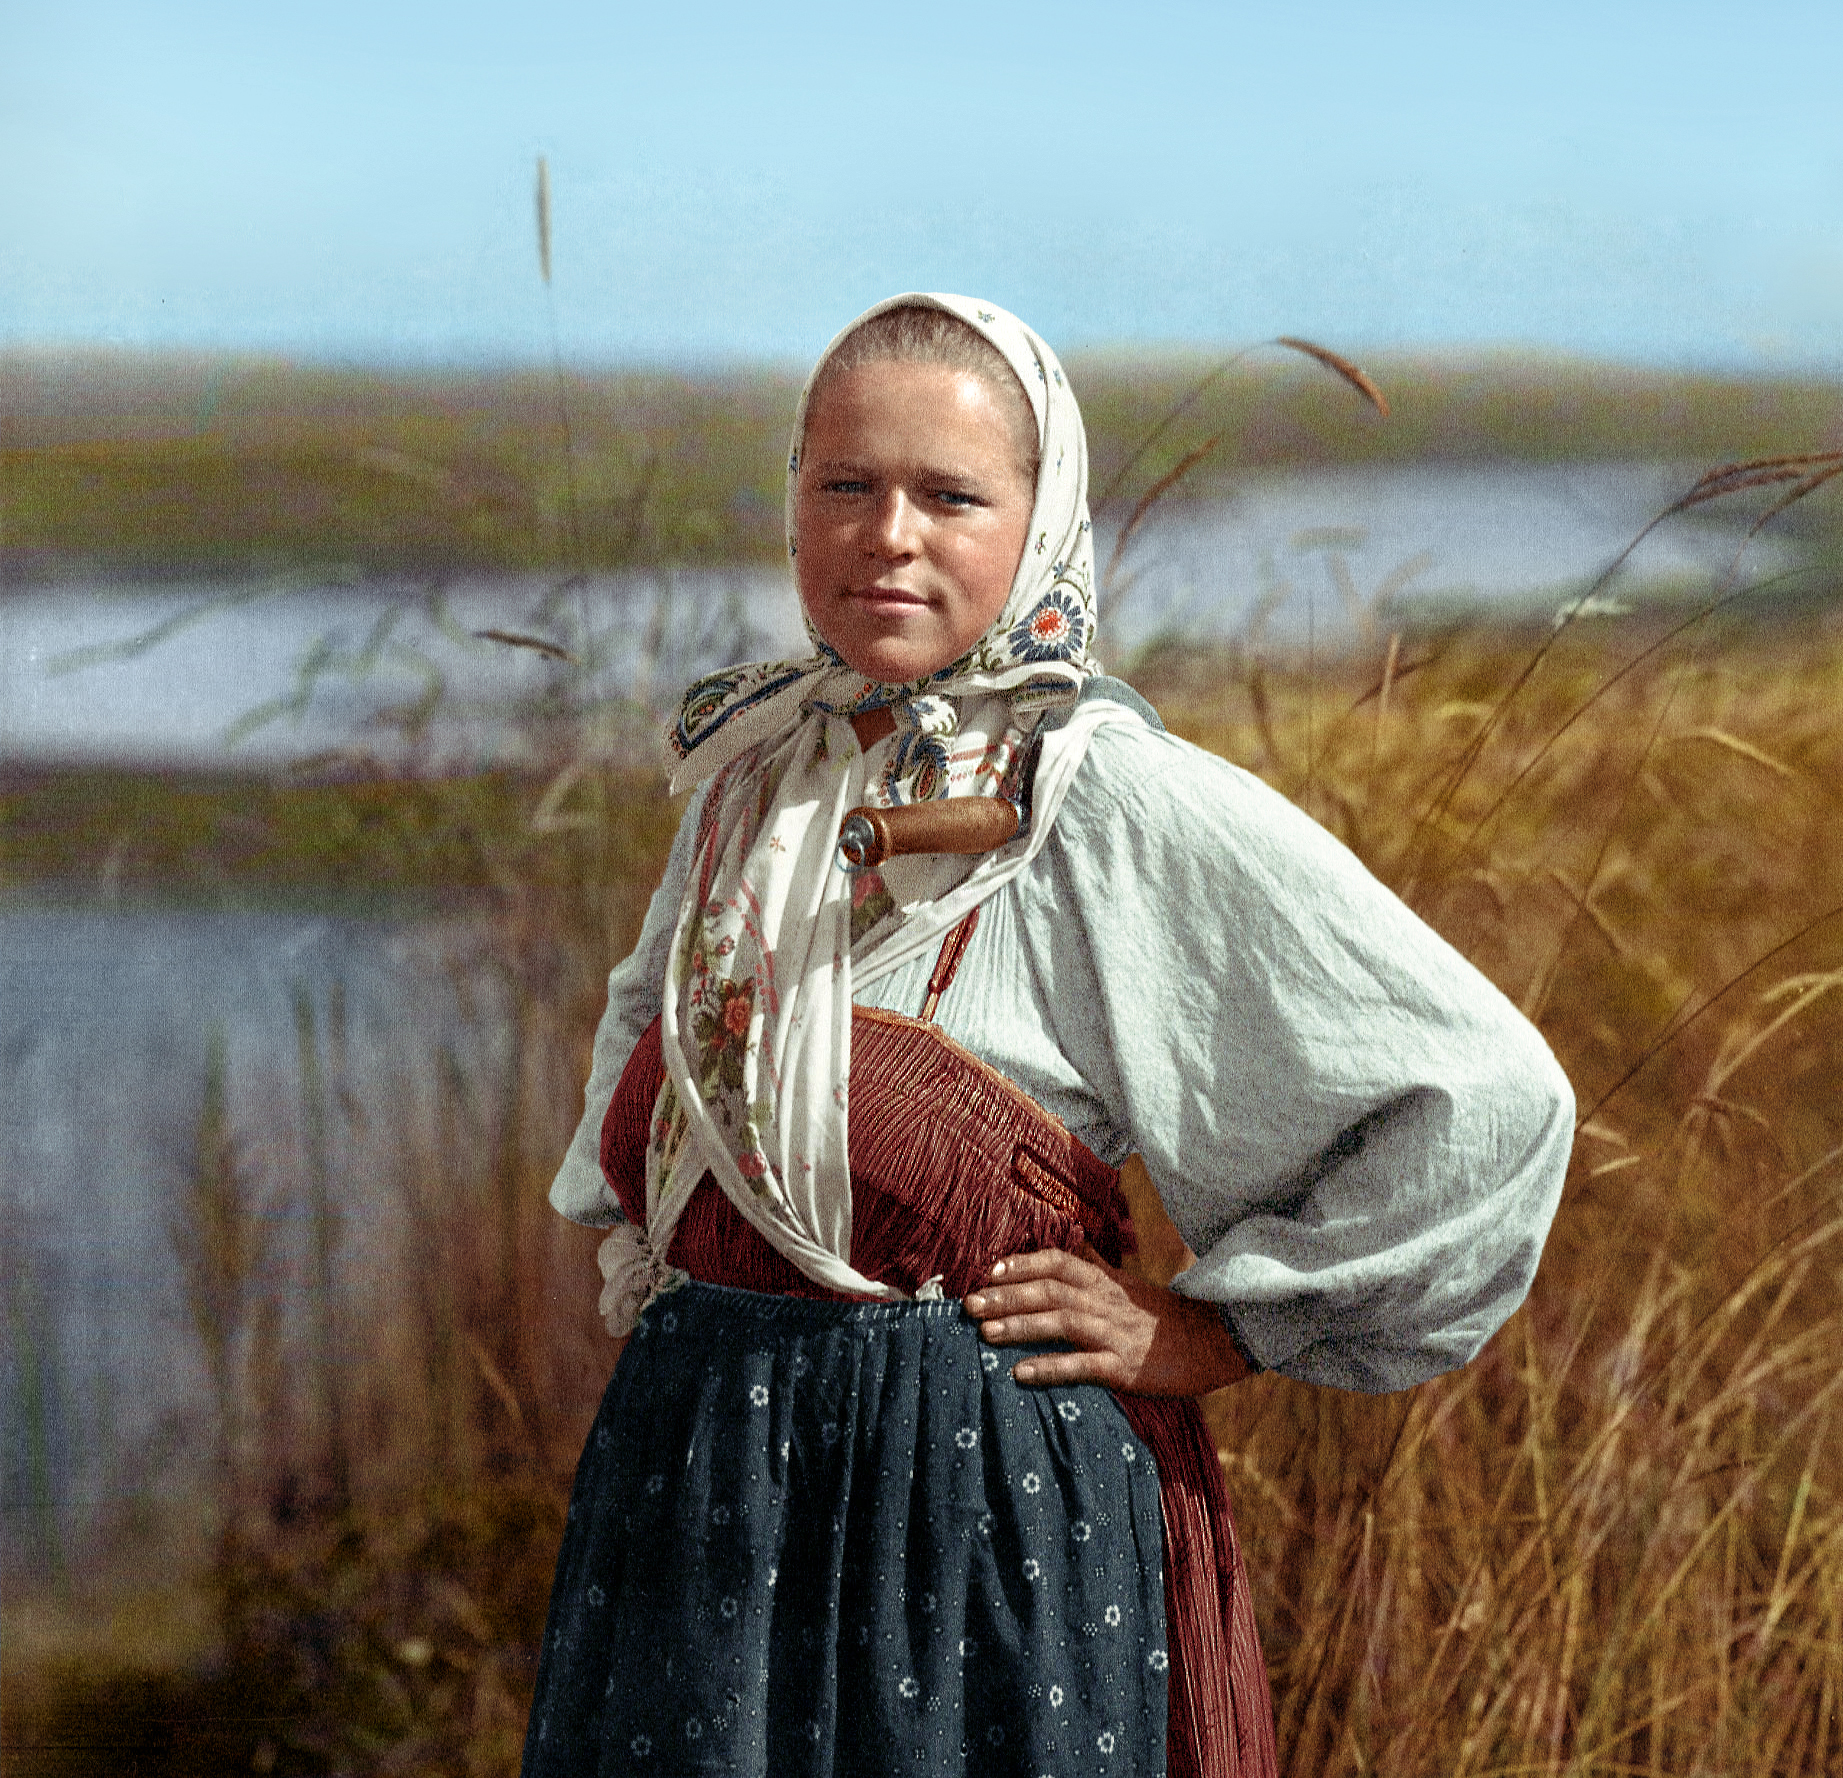 Смотреть Русских Женщин Фото Бесплатно